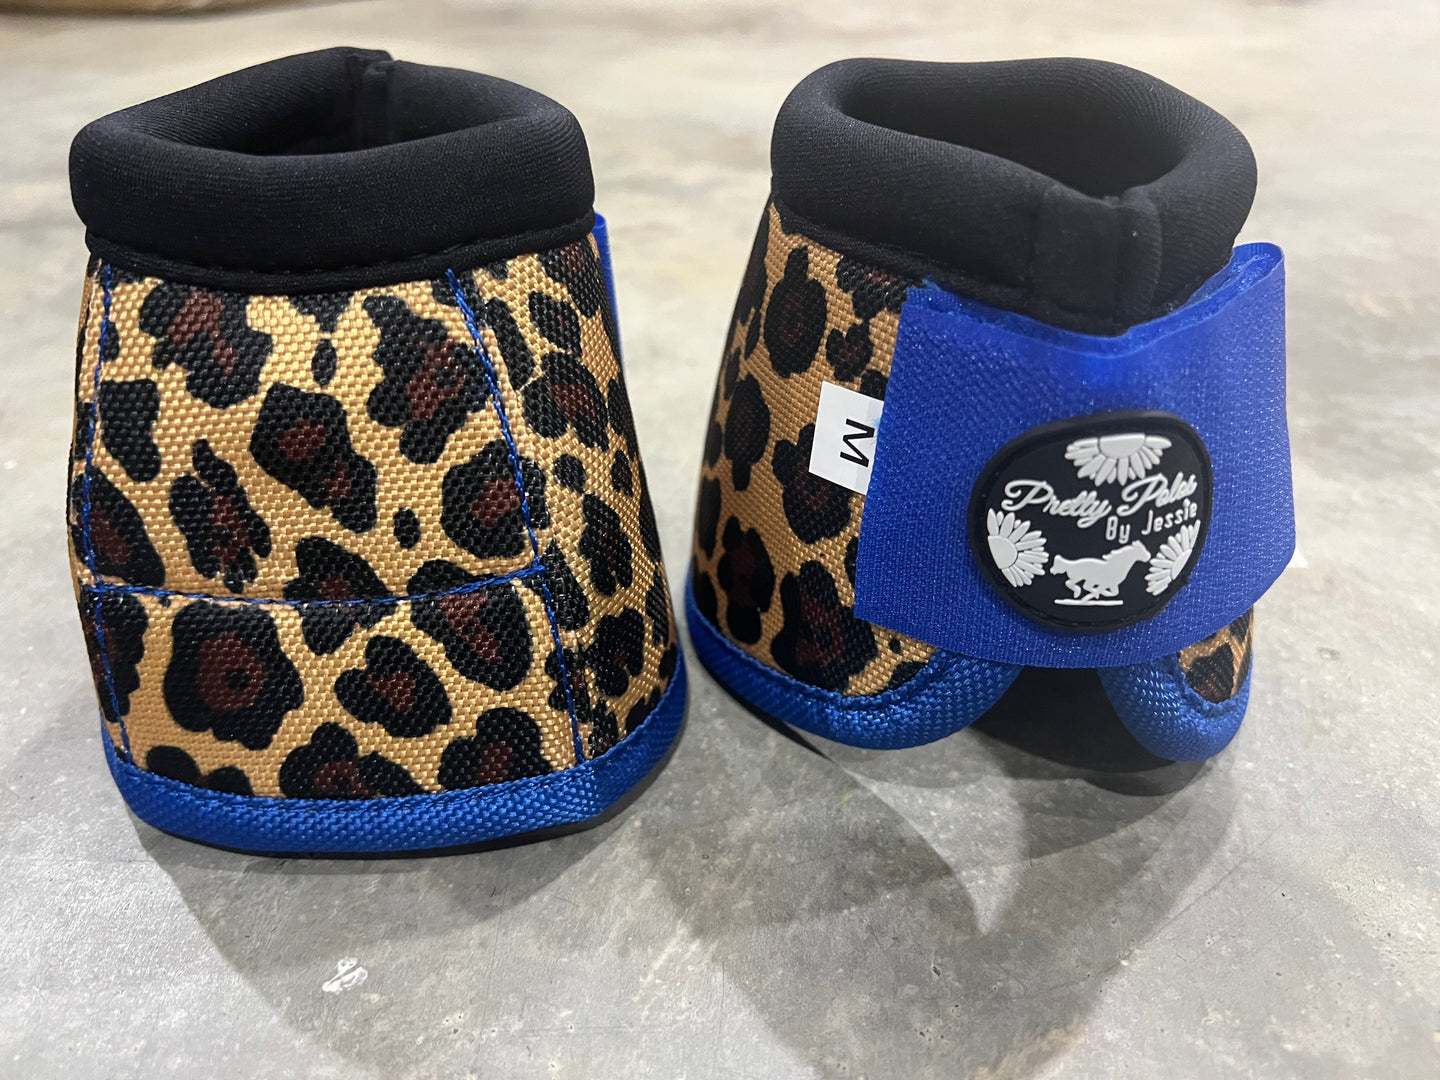 Royal Cheetah Bell Boots